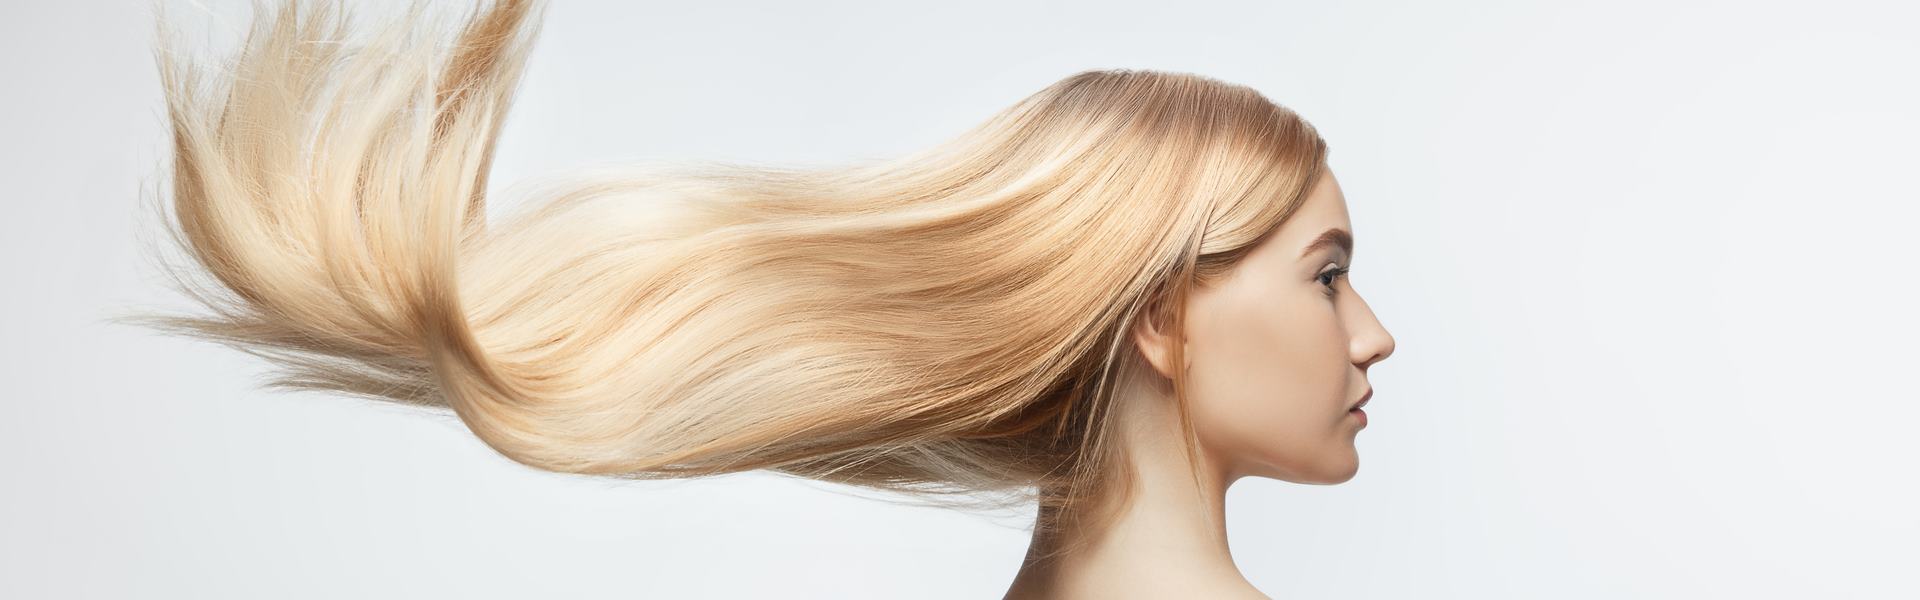 Экономия на салоне: как делать ботокс для волос в домашних условиях и стоит ли